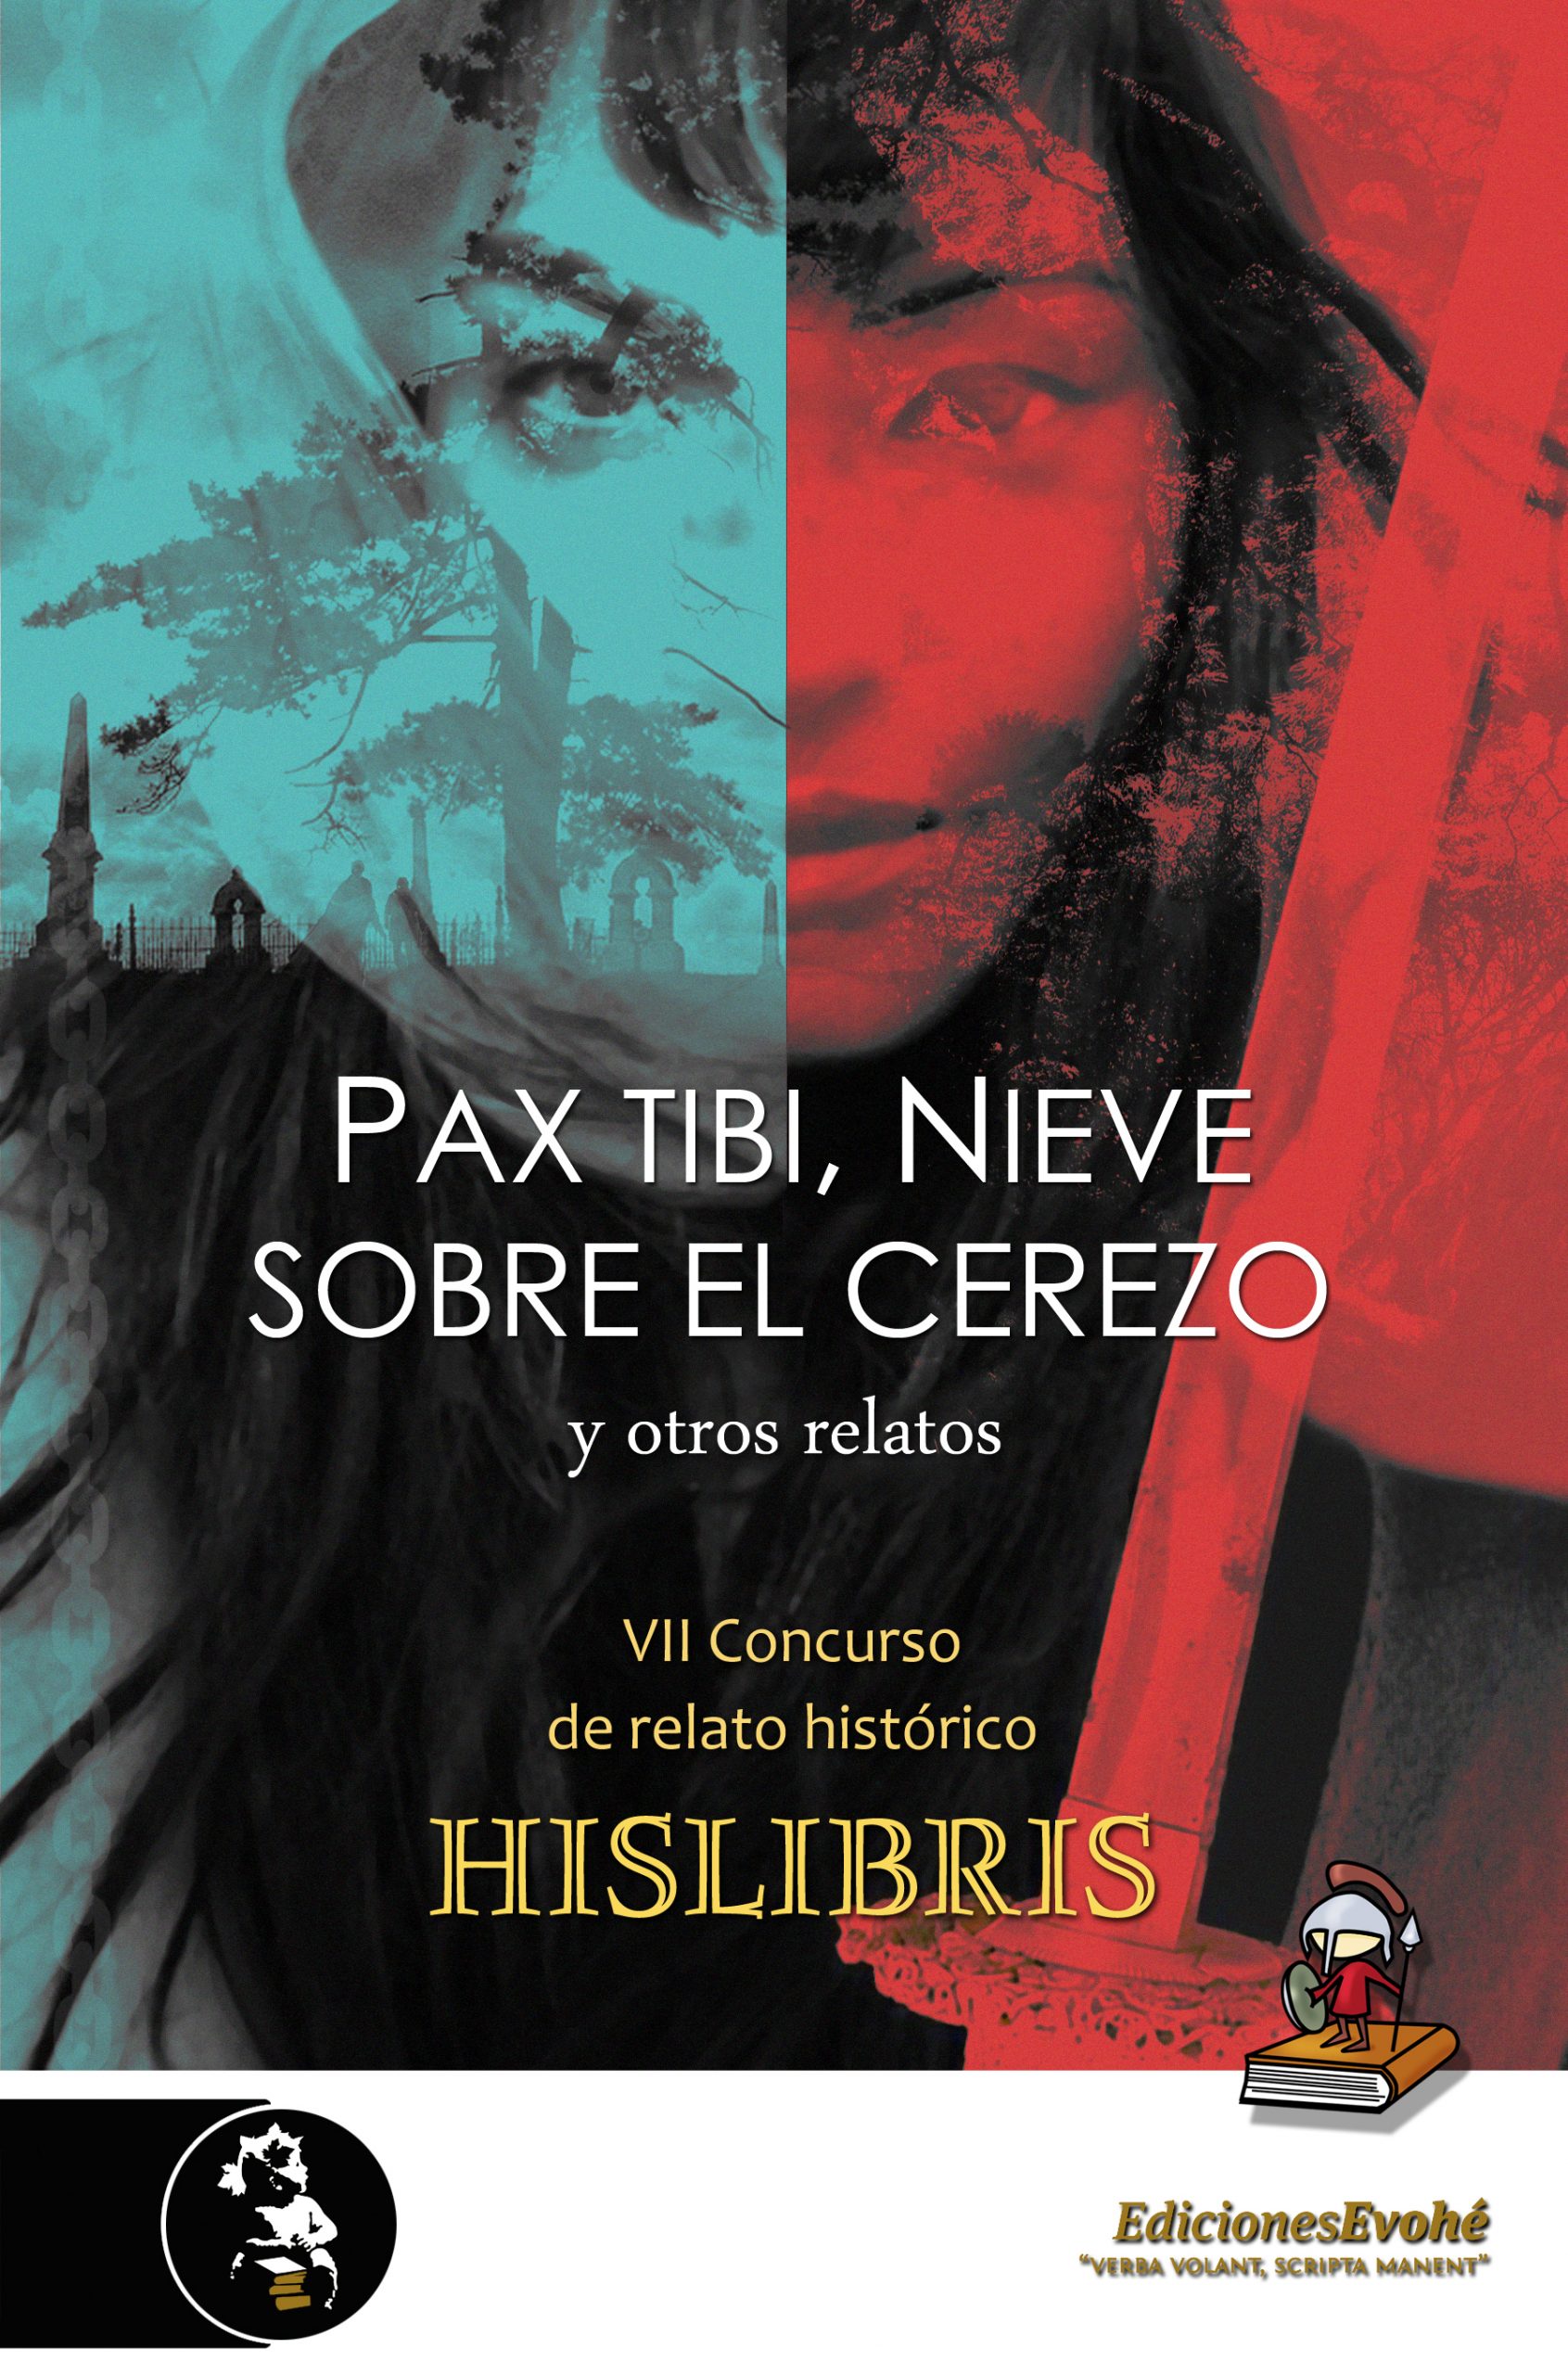 PAX TIBI, NIEVE SOBRE EL CEREZO Y OTROS RELATOS (VII Concurso de Relato Histórico Hislibris) – VV. AA.